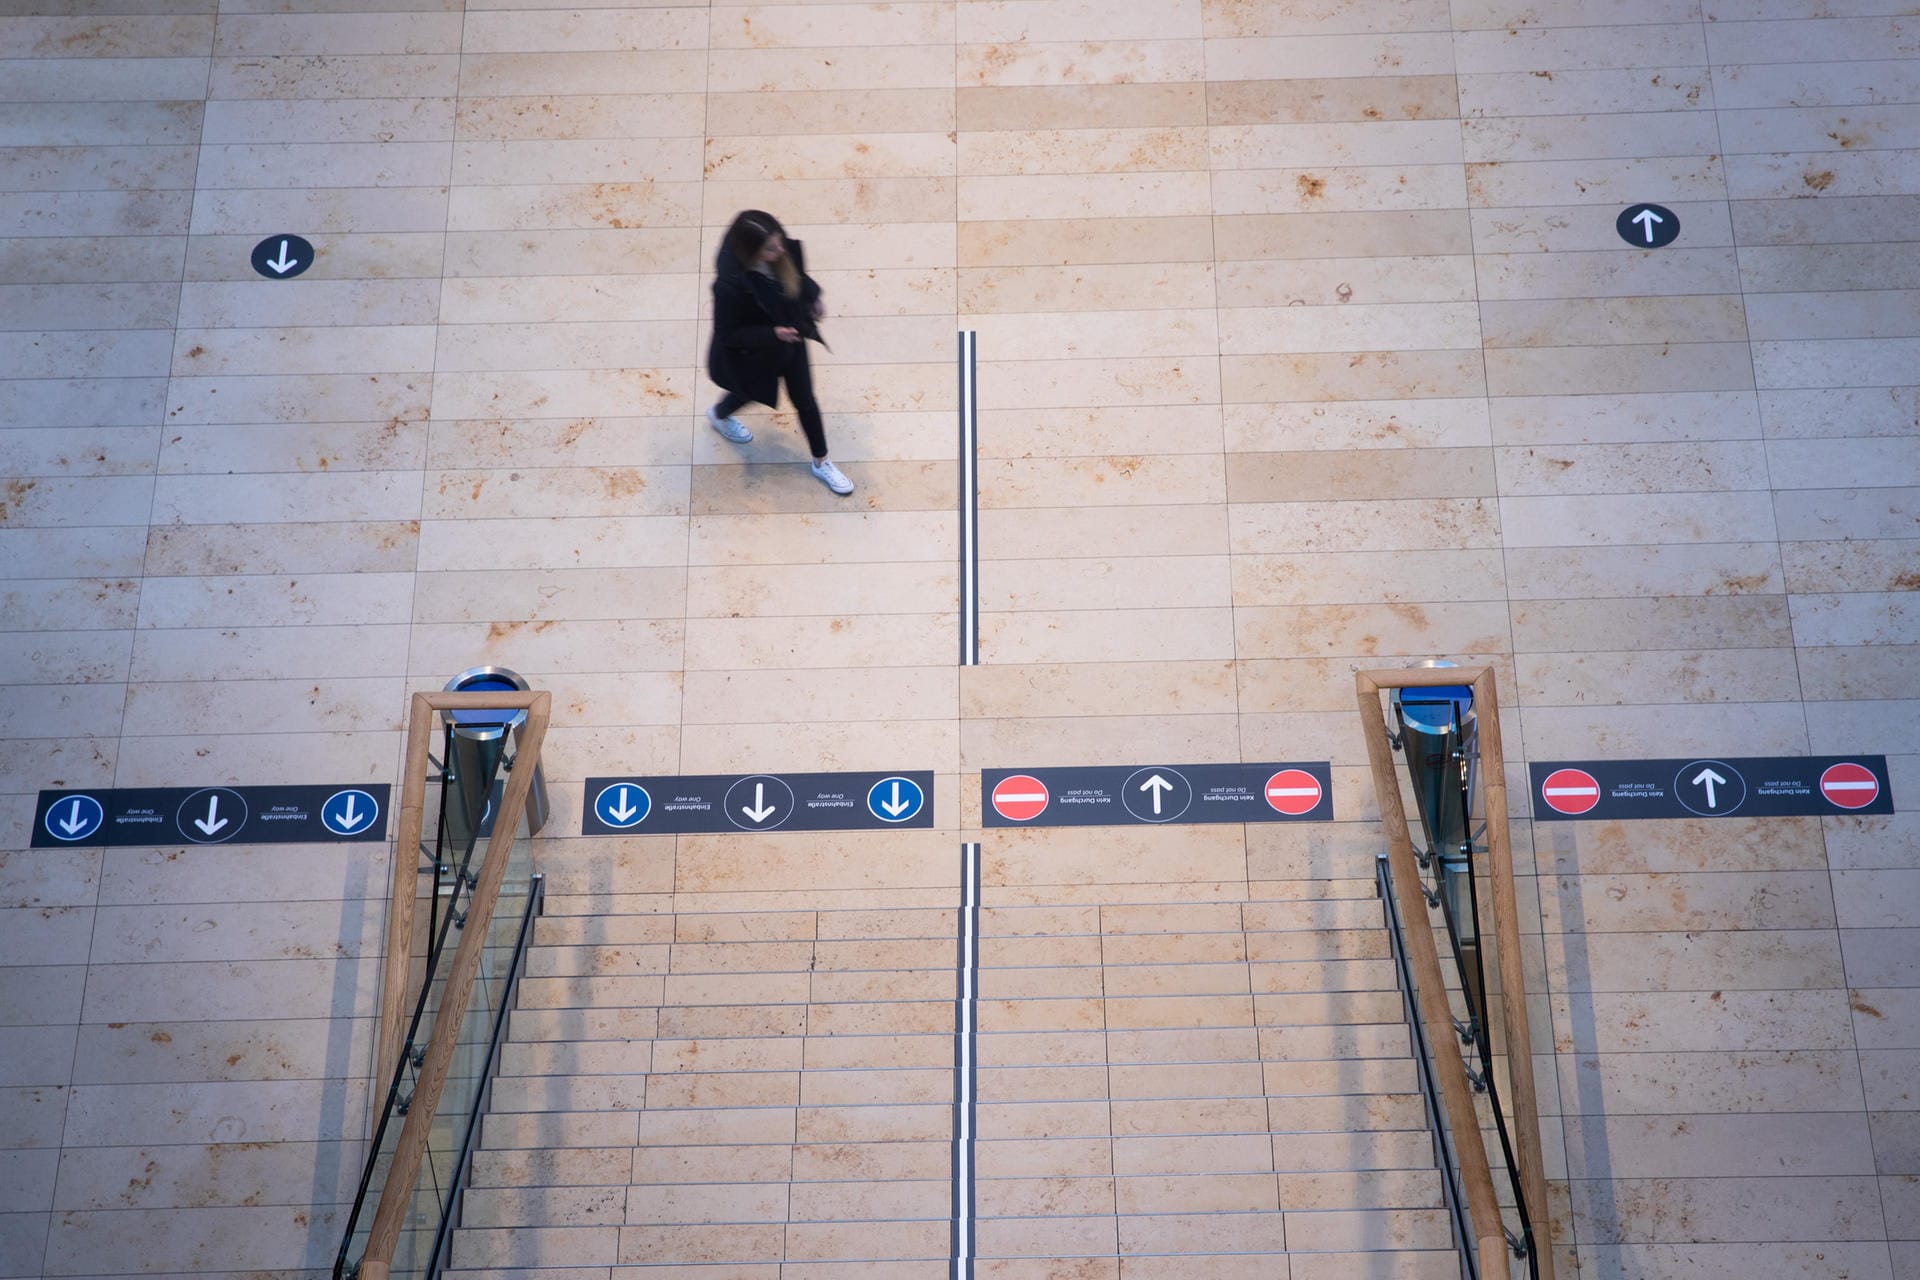 Eine Passantin in der Europa Passage: Im Hamburger Einkaufszentrum gilt ab sofort ein Richtungsgebot, die Besucher dürfen sich auf den jeweiligen Bahnen nur in eine Richtung bewegen.